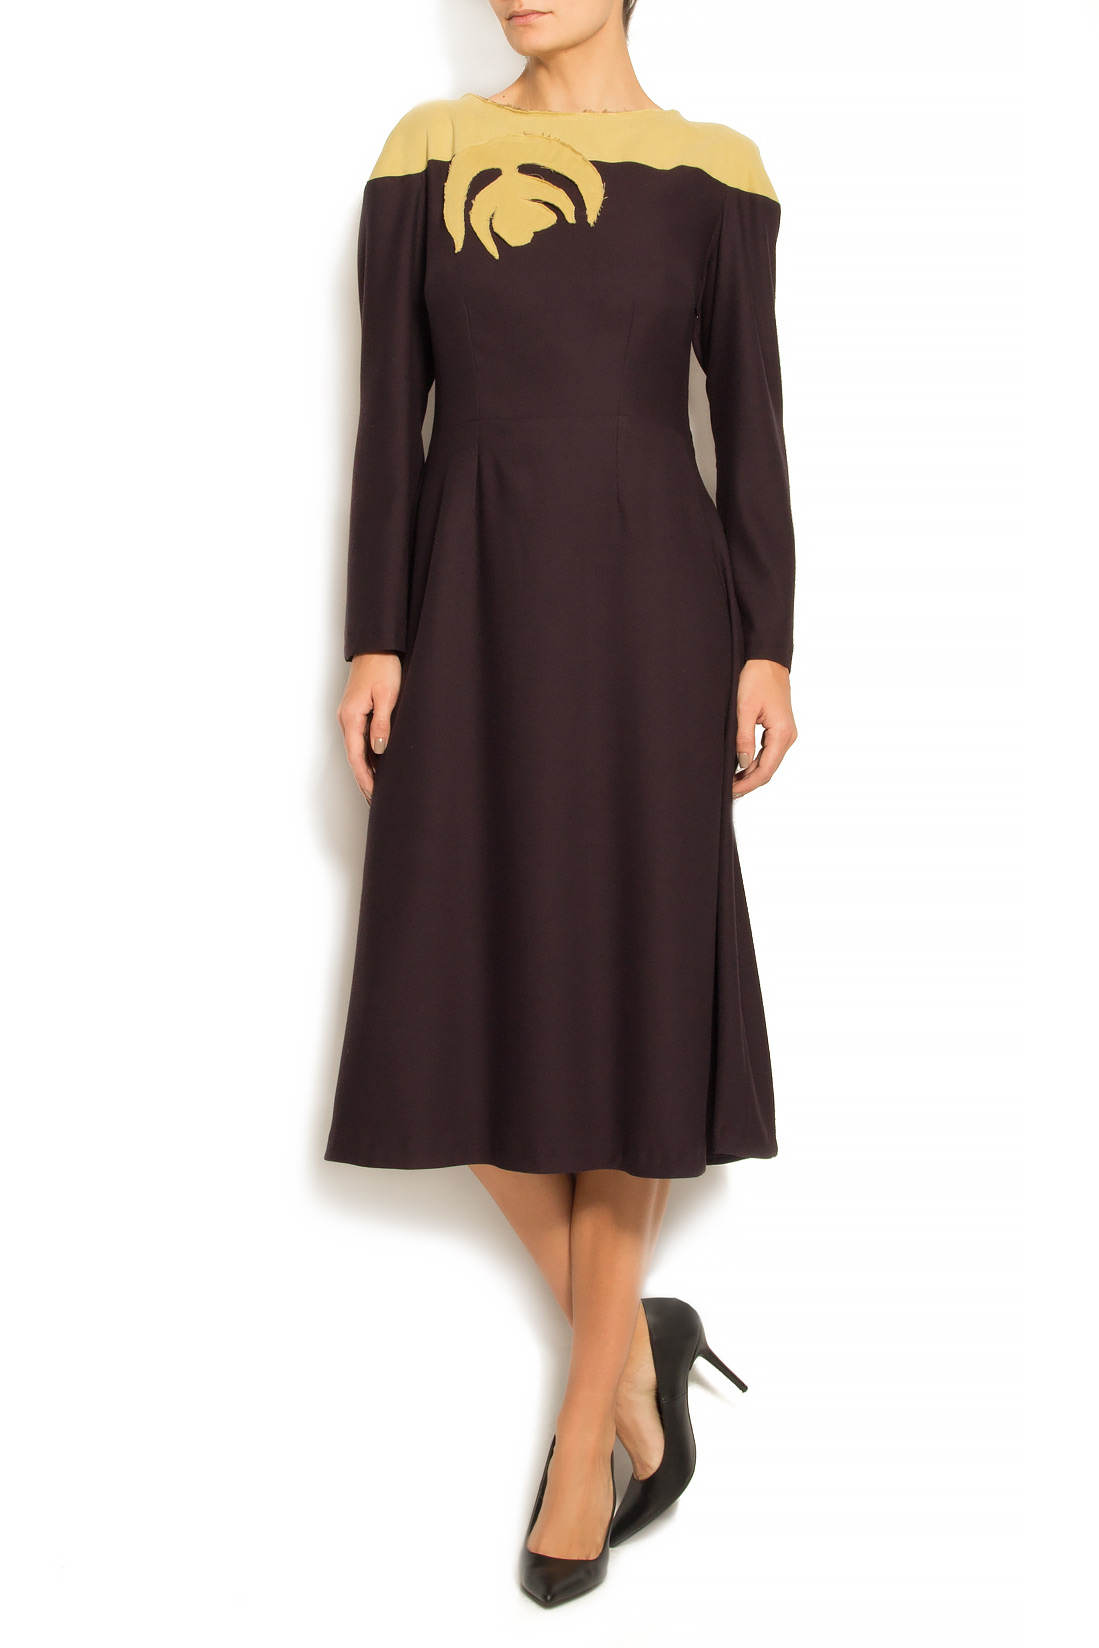 فستان من الصوف, الكشمير و القطن لينا كريفانو image 0